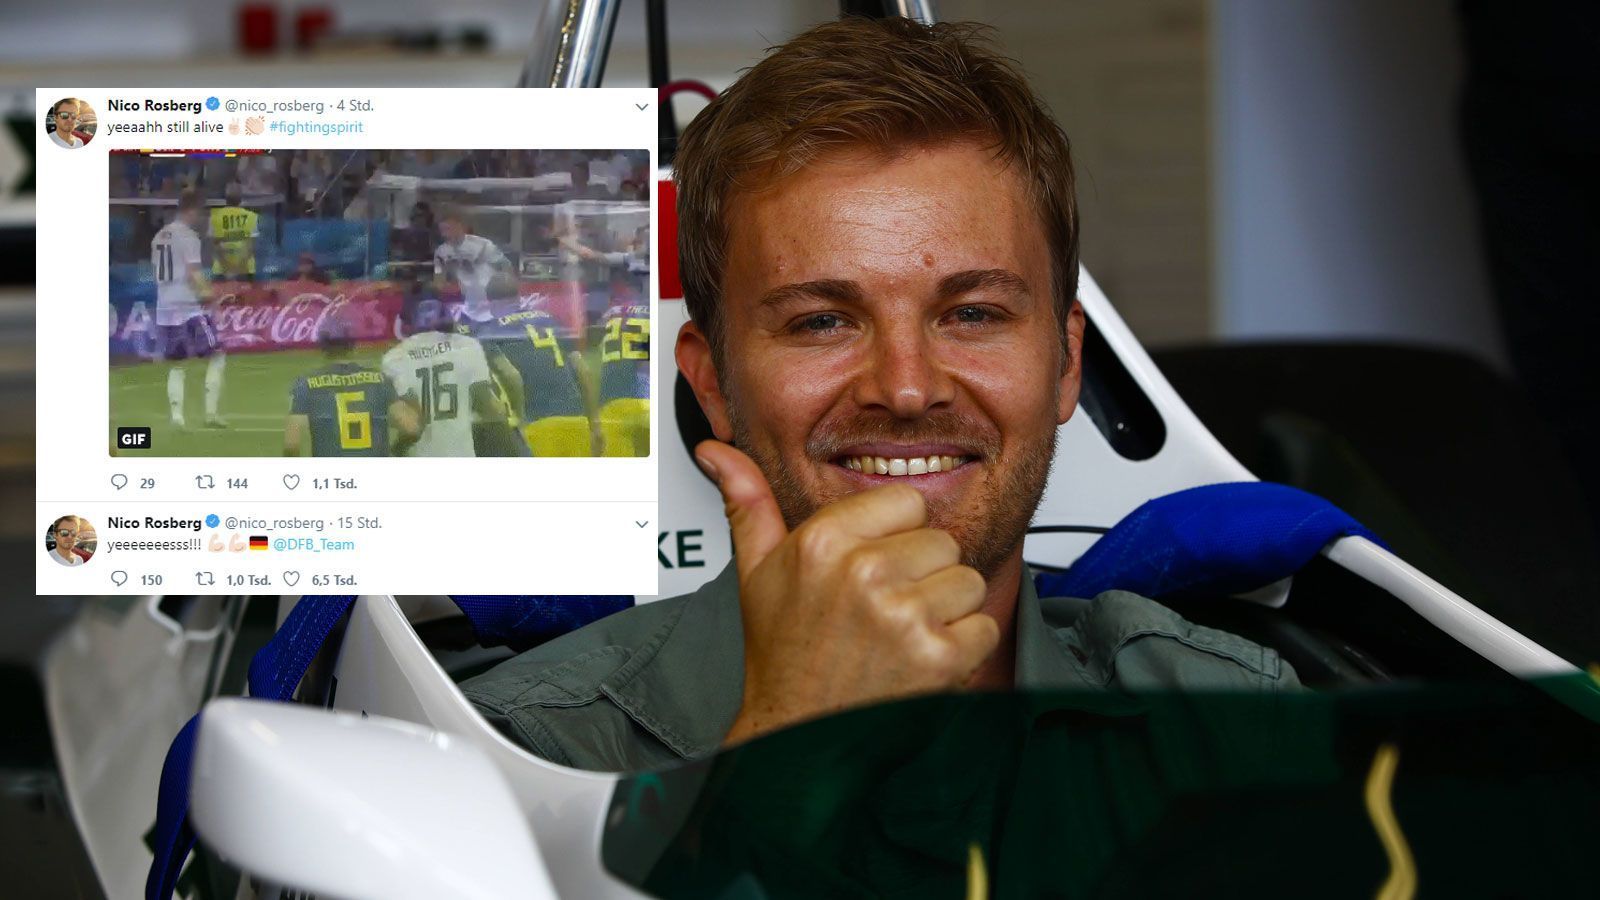 
                <strong>Nico Rosberg</strong><br>
                Nico Rosberg musste das Spiel auf der Hochzeit seines besten Freundes verfolgen. Auf Twitter postete er das Siegtor mit einem GIF und dem Hashtag #fightingspirit.
              